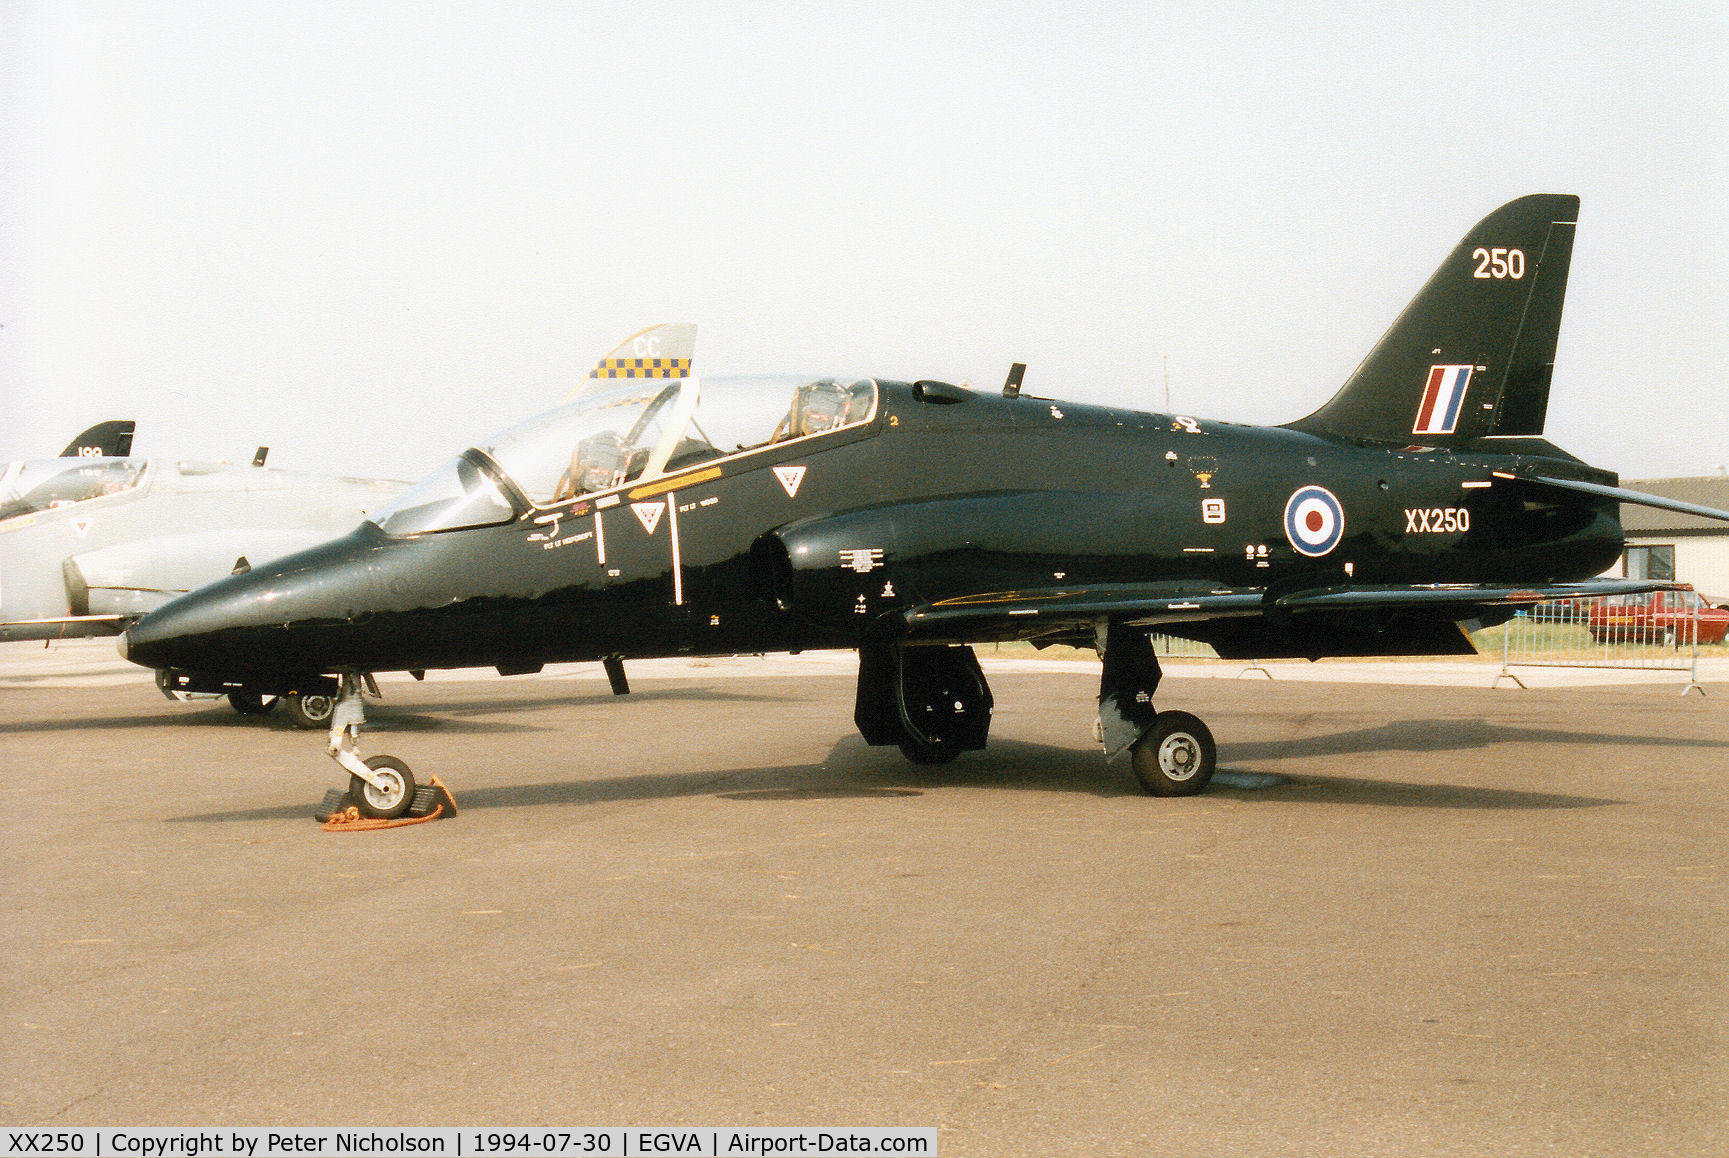 XX250, 1978 Hawker Siddeley Hawk T.1 C/N 086/312086, Hawk T.1, callsign Skylark 1, of 6 Flying Training School on display at the 1994 Intnl Air Tattoo at RAF Fairford.